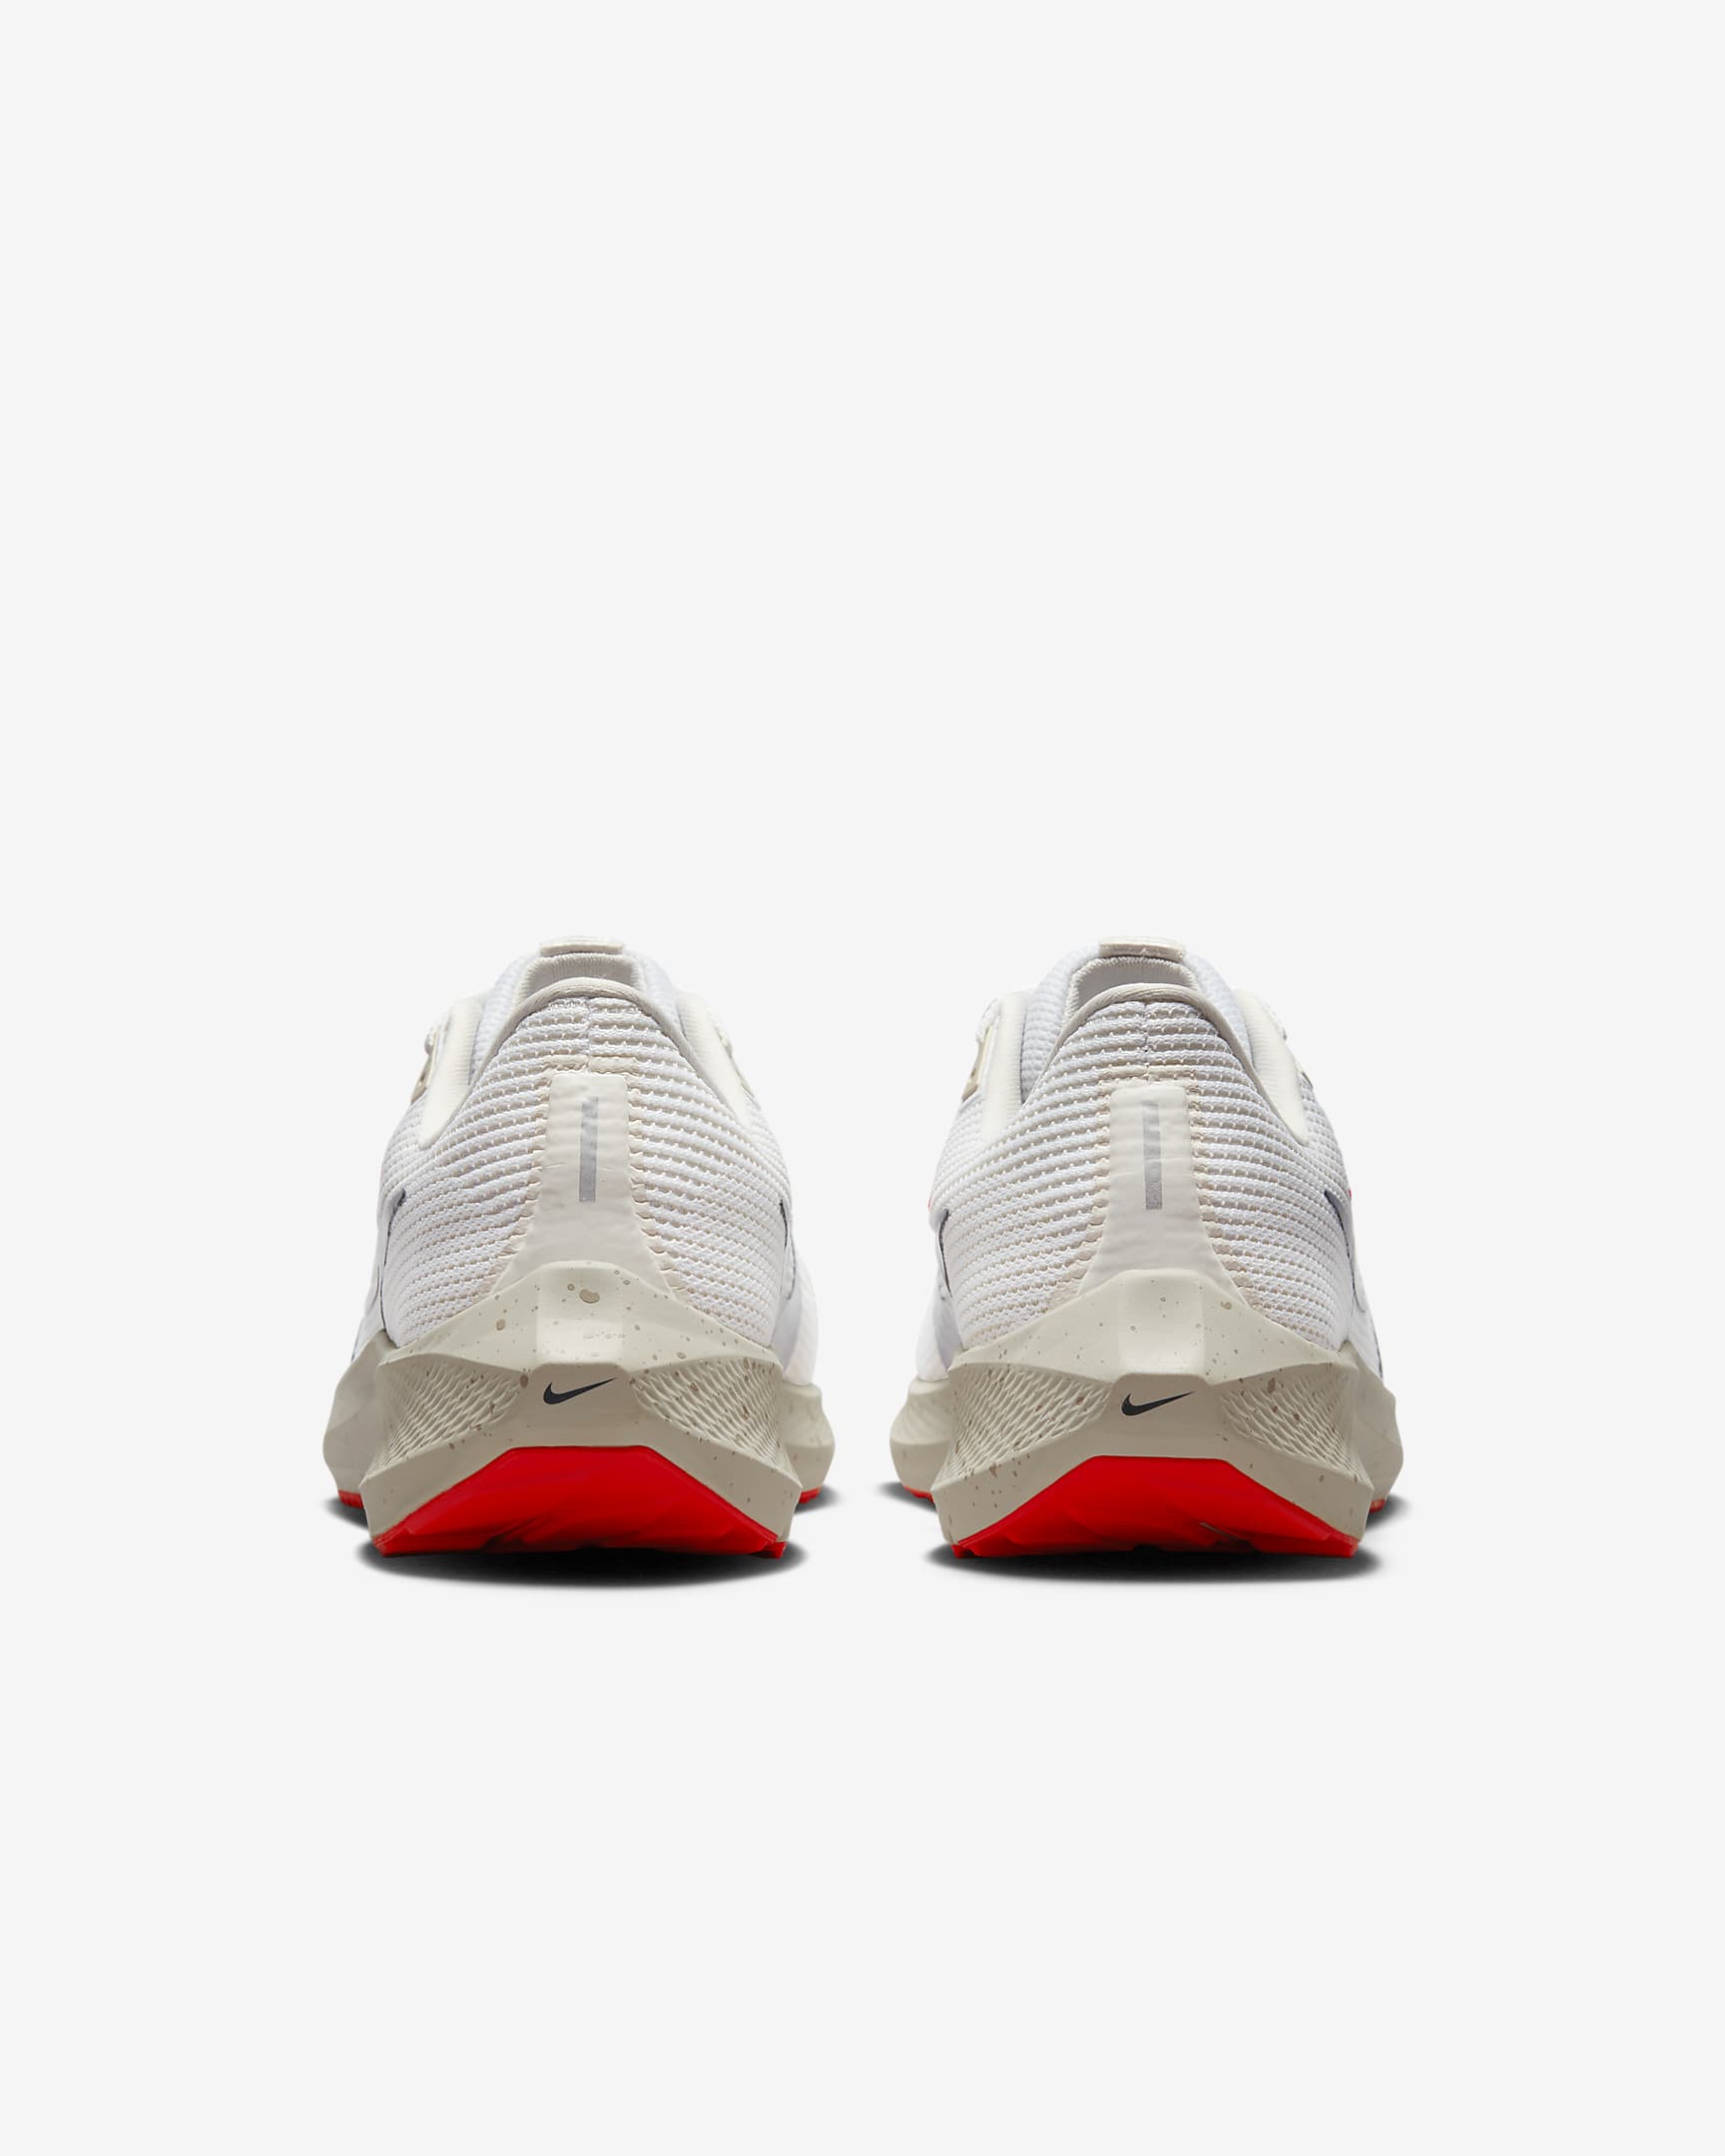 Nike Pegasus 40 Men's Road Running Shoes - White/Light Orewood Brown/Phantom/Obsidian